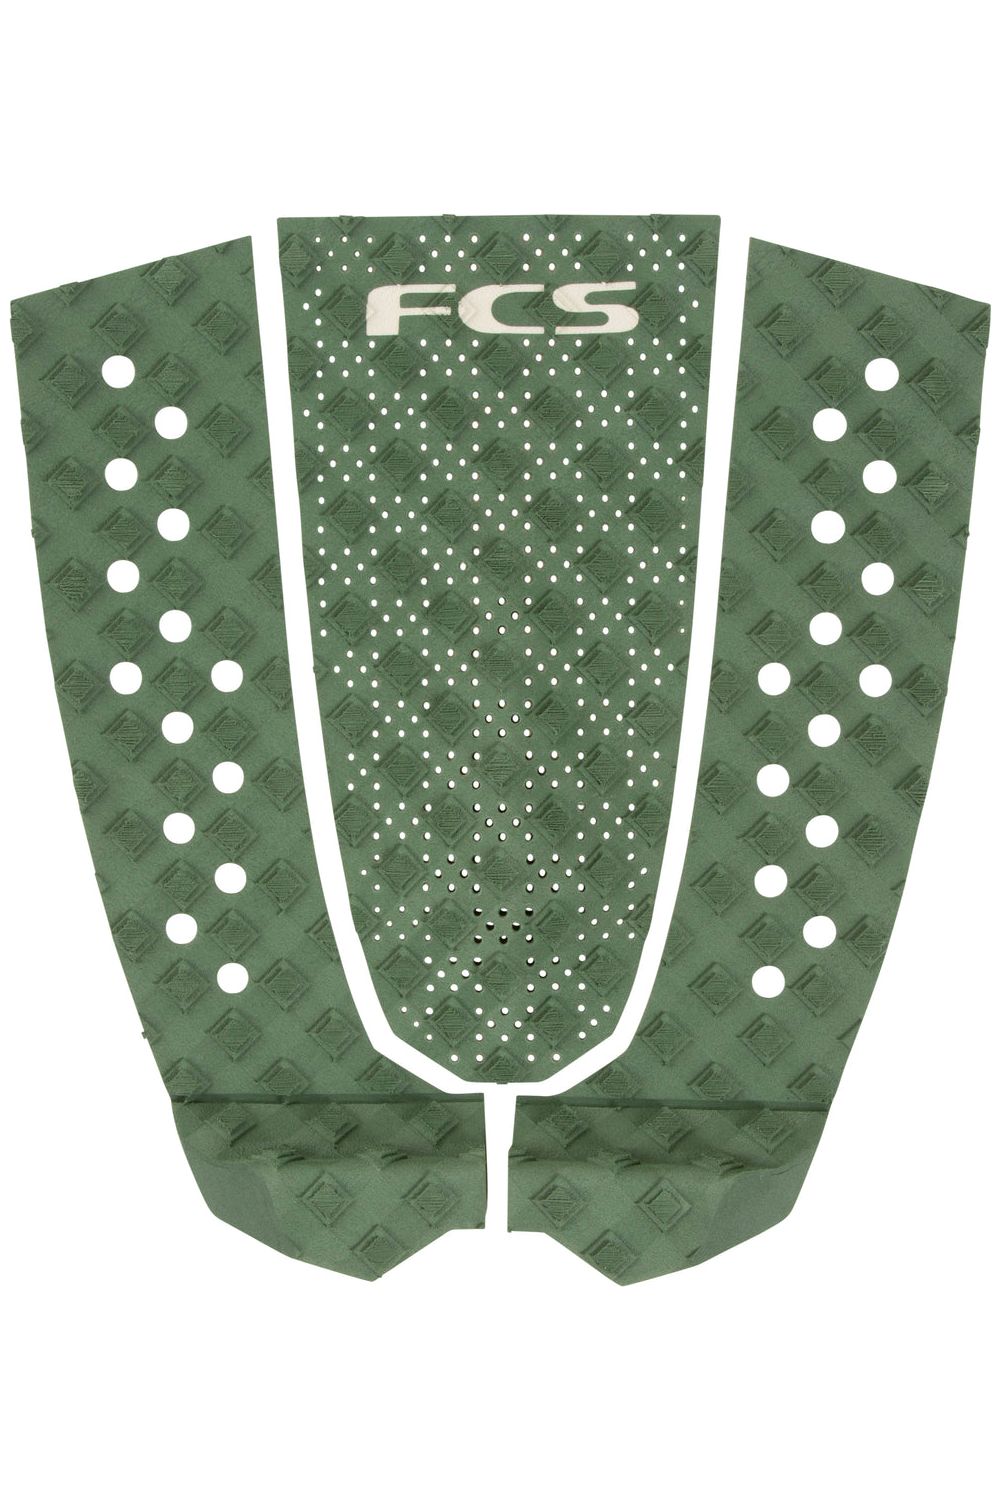 FCS T-3 Eco Jade Tail Pad